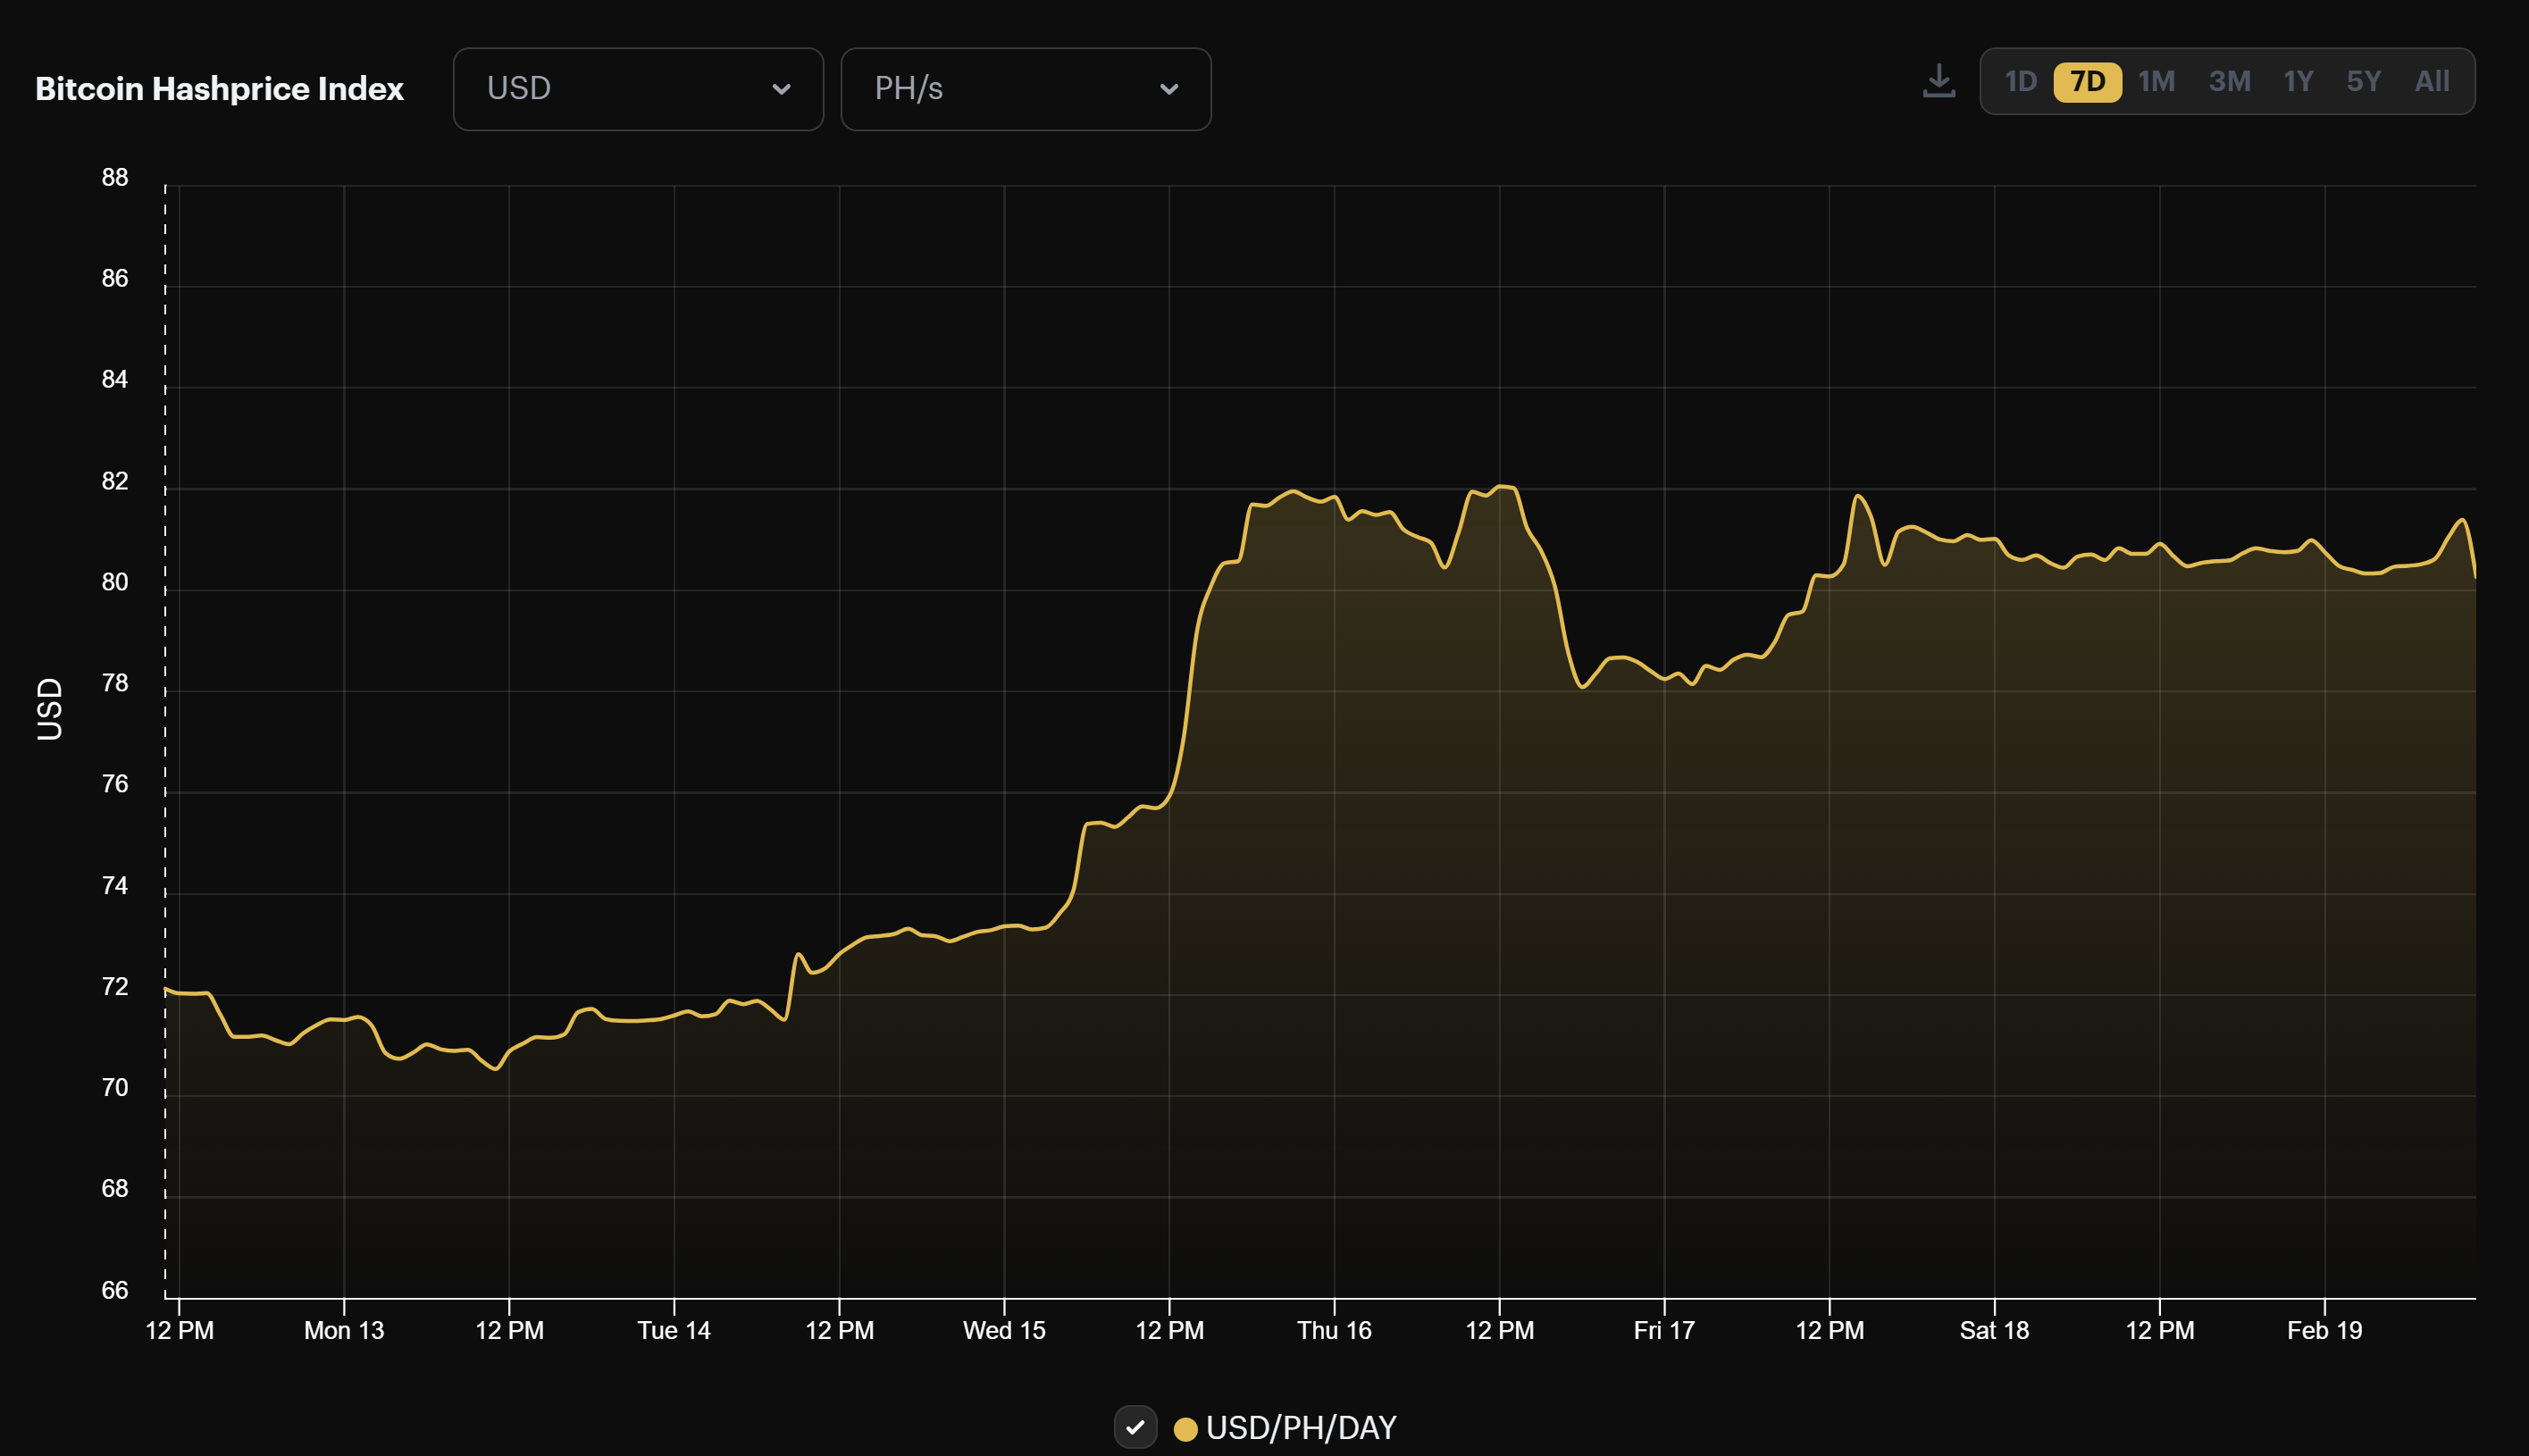 Bitcoin mining USD hashprice (February 12 - 19, 2023)